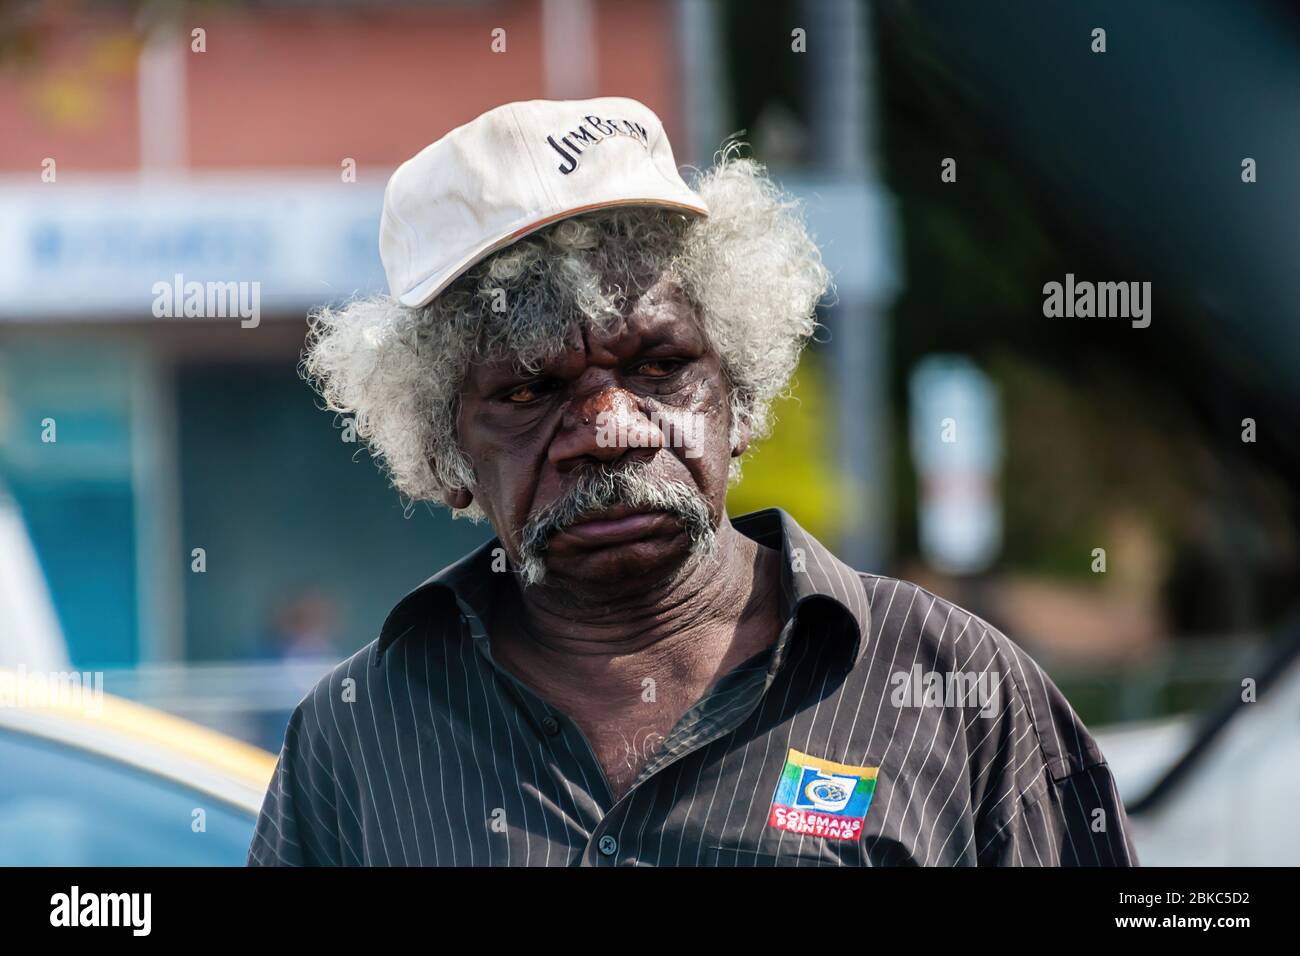 Katherine, Australia - 17 luglio 2011: Un ritratto dell'uomo aborigeno Foto Stock